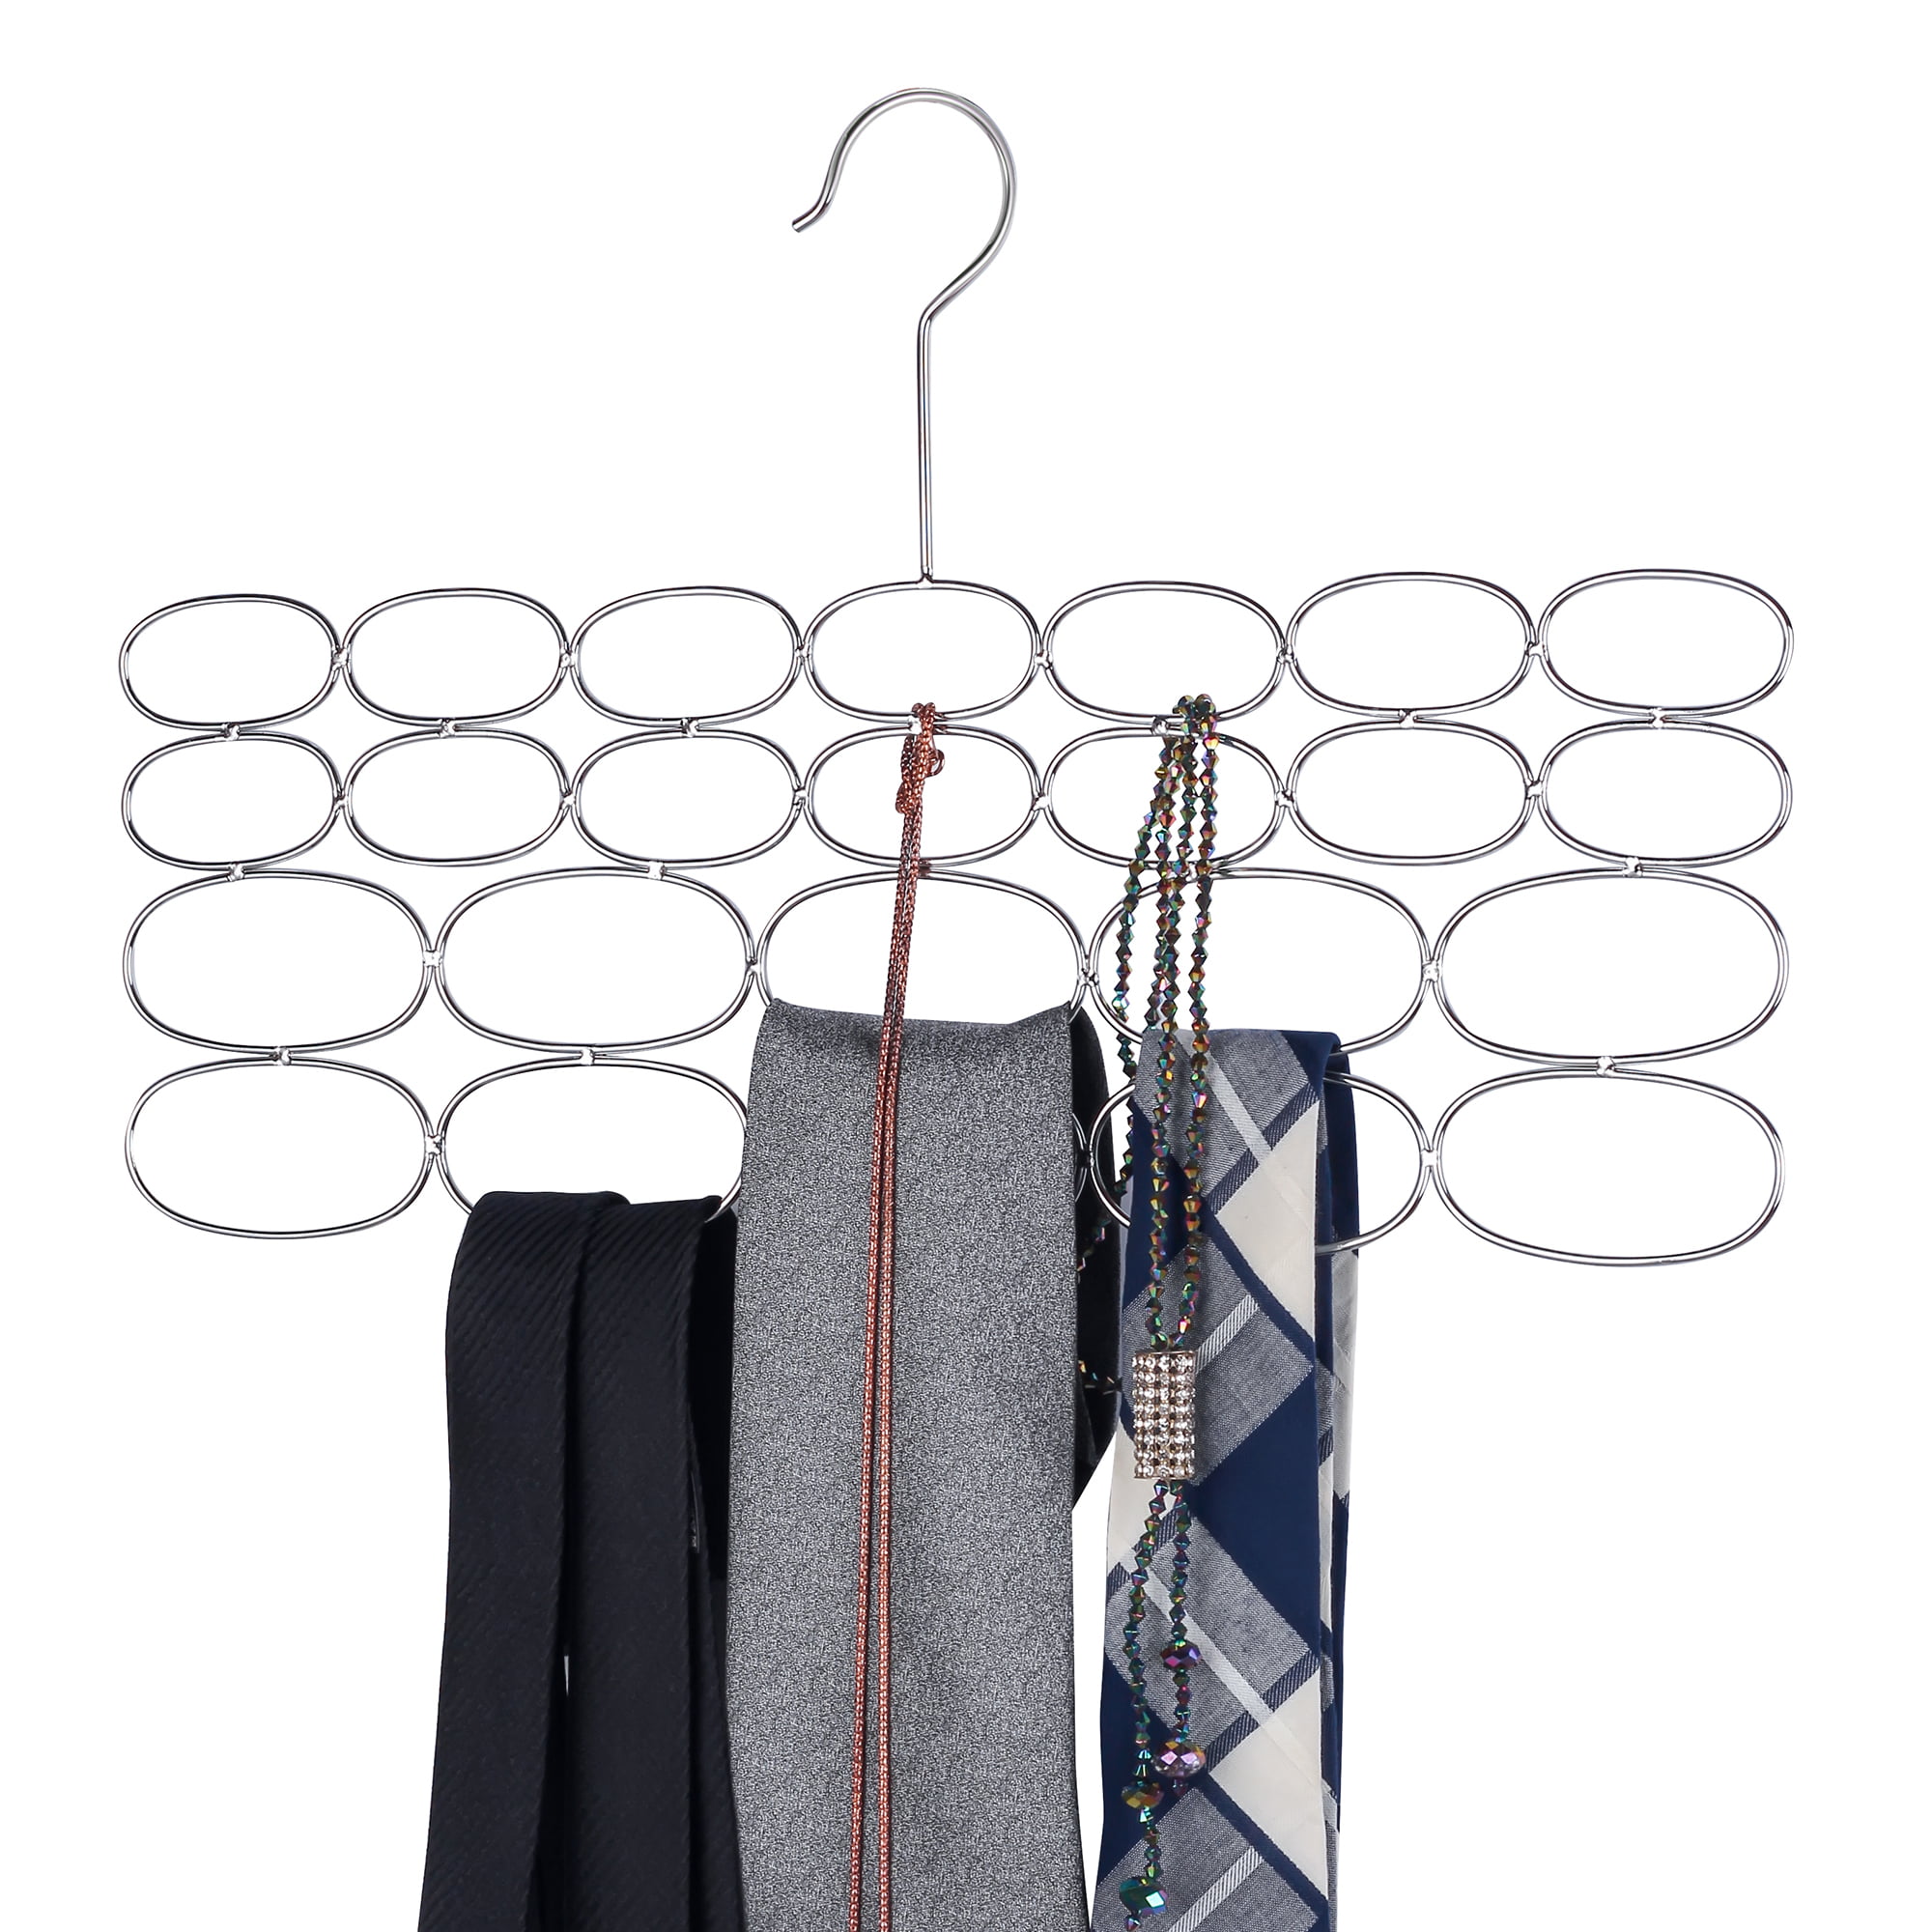 Belt hanger organizer holder rack – 24 loop Durable Steel Scarf Tie Set of 2